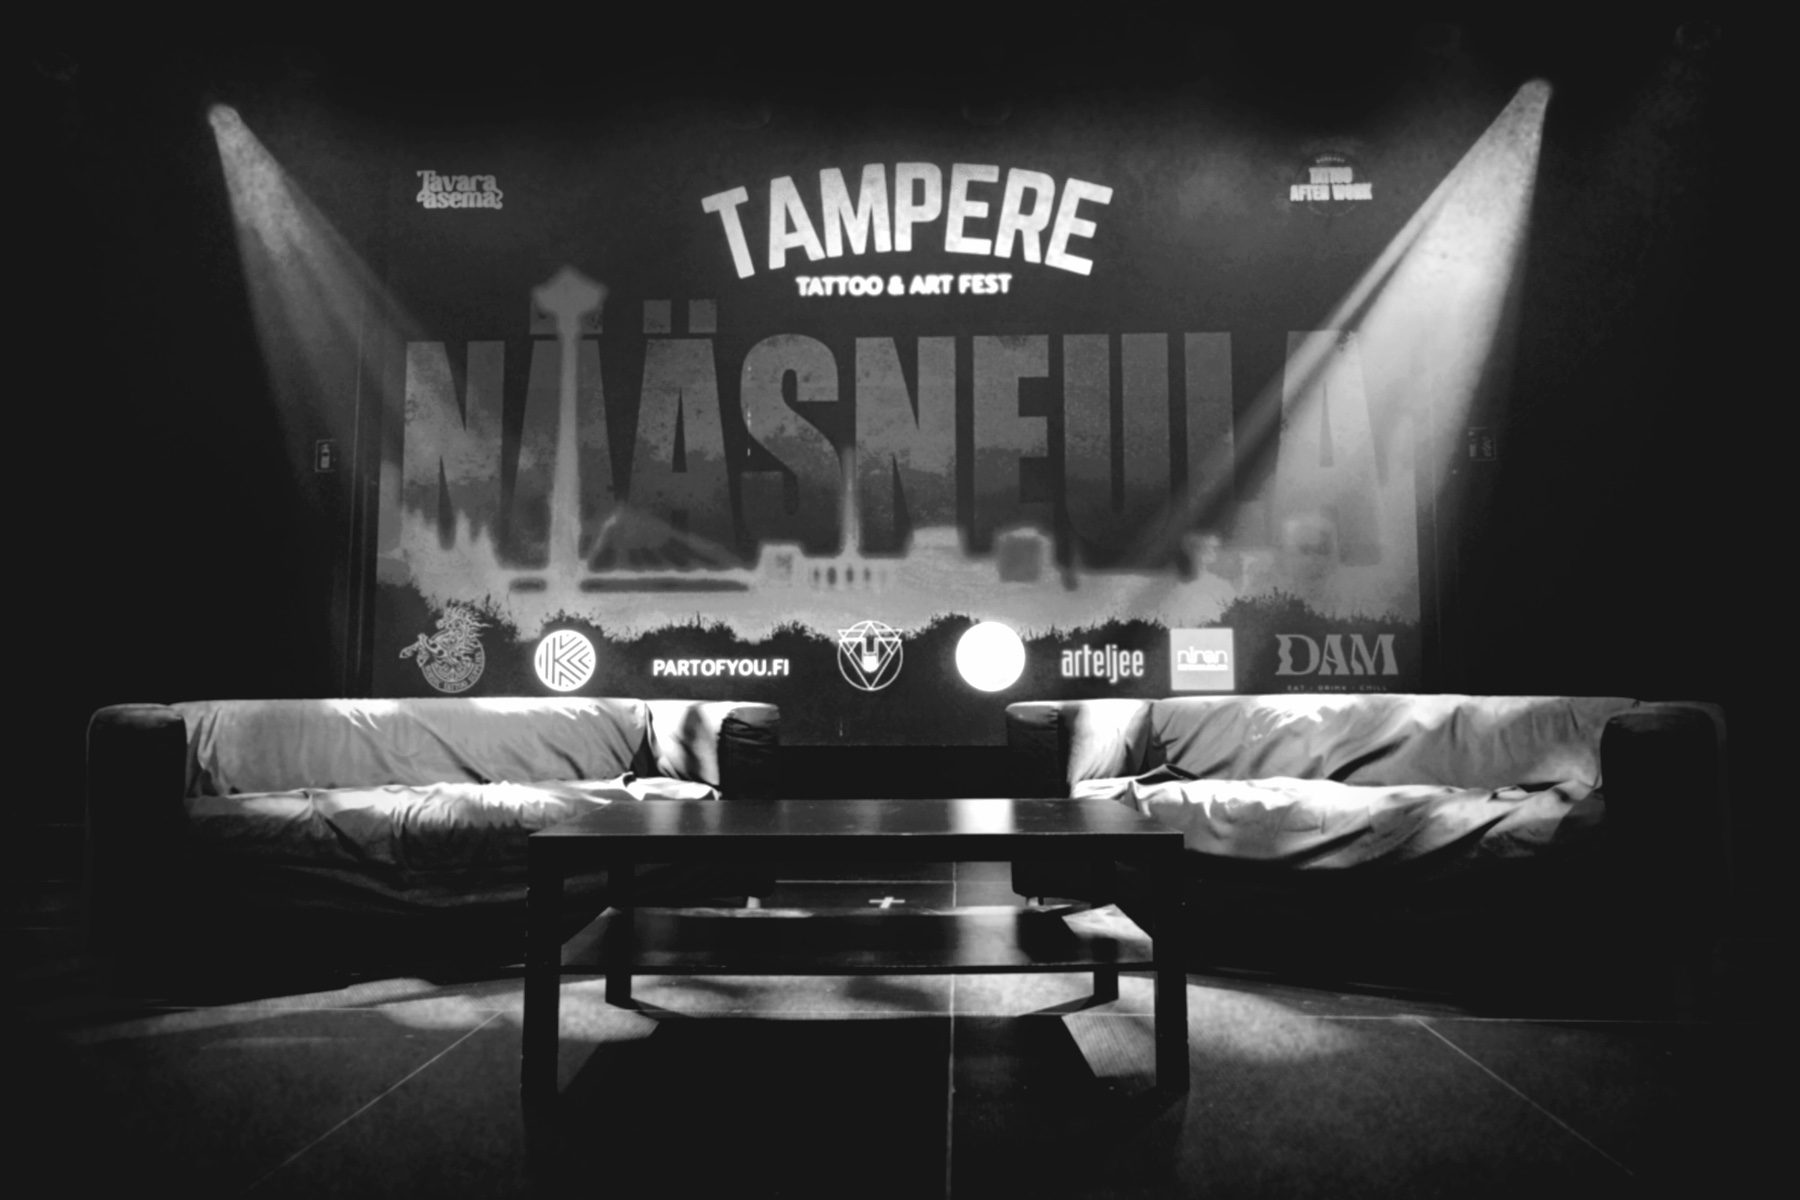 Mustavalkoinen valokuva Tavara-aseman lavalta, jonne on aseteltu kaksi isoa sohvaa ja matala pöytä tapahtuman keskustelijoita varten. Taustalle on heijastettu Tampere Tattoo & Art Festin iso logo ja kuvituskuva. Kaksi valonheitintä valaisee lavaa.